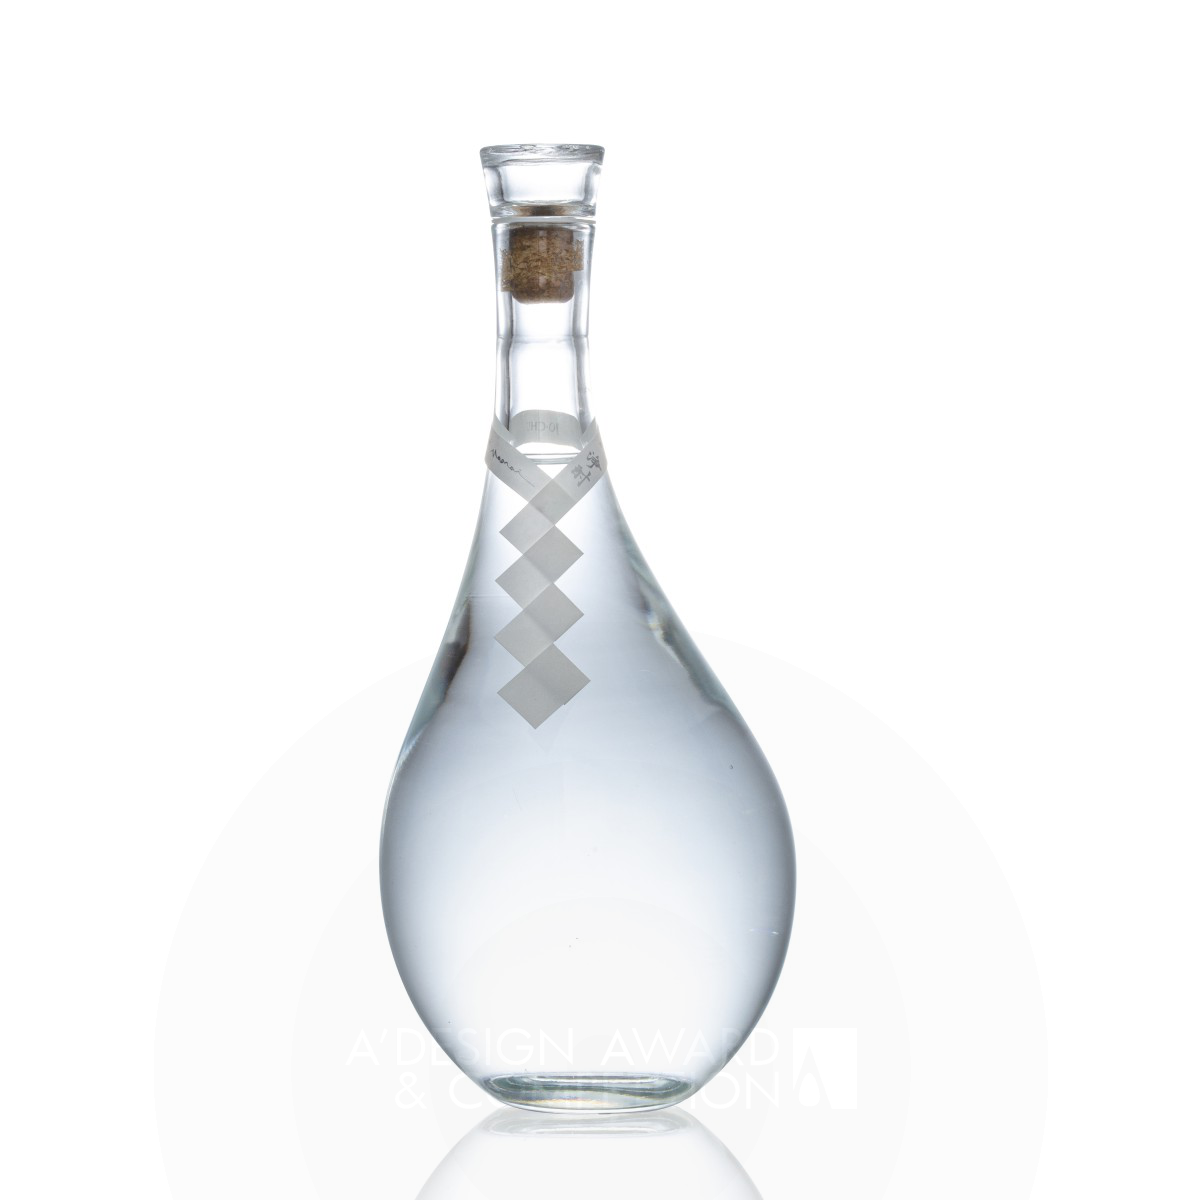 JO CHU Sake Bottle by Eisuke Tachikawa